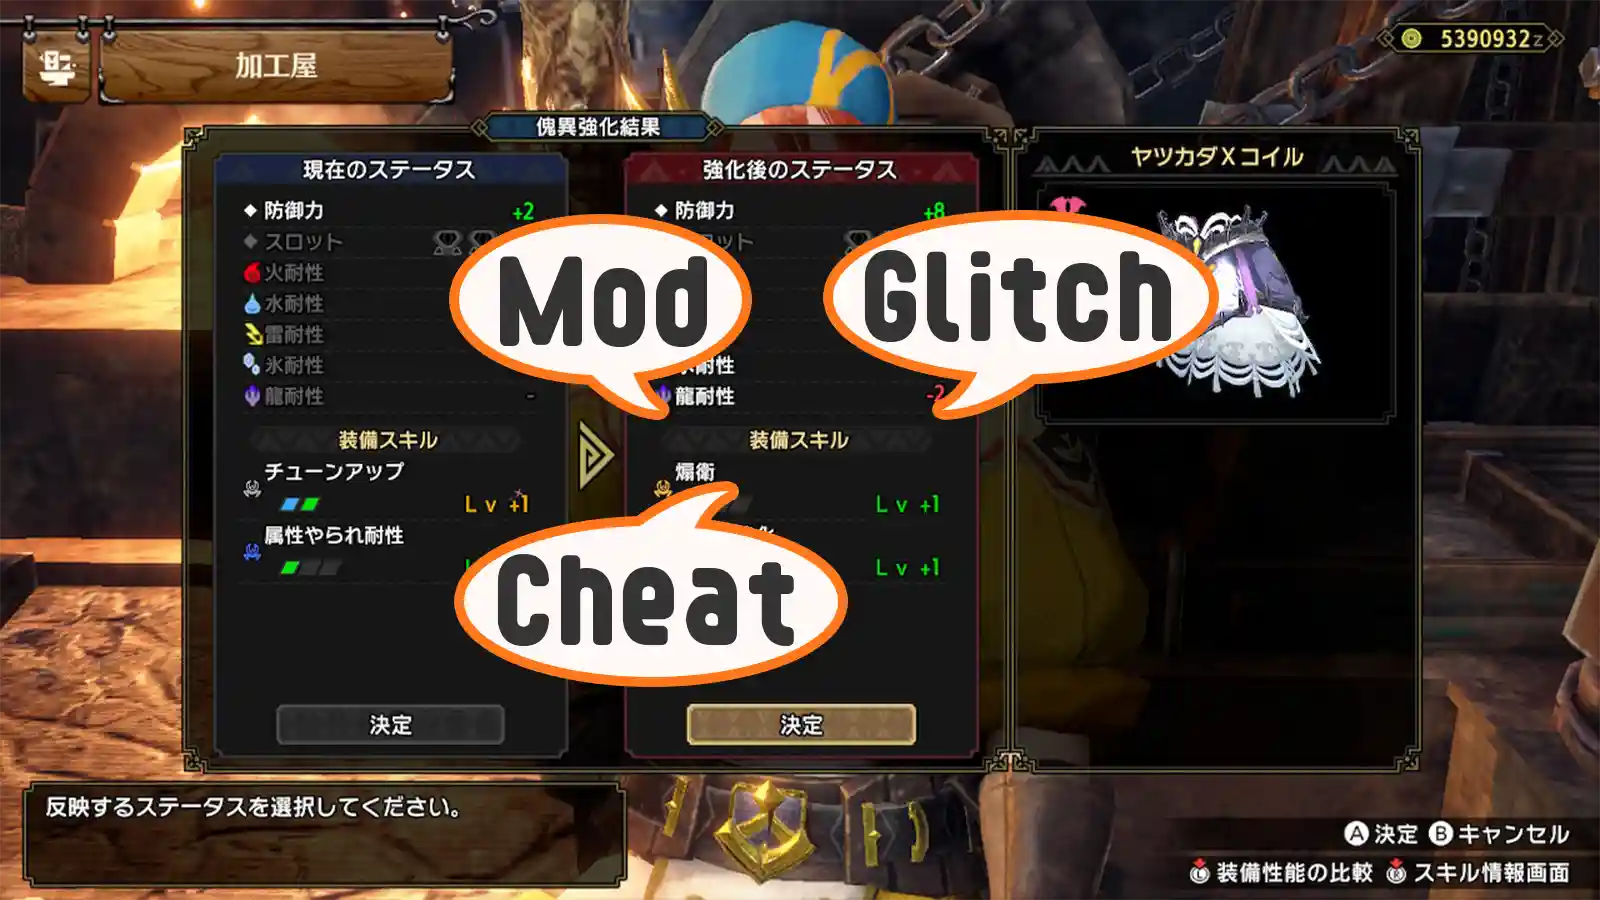 モッド mod グリッチ glitch チート cheat ゲーム 用語